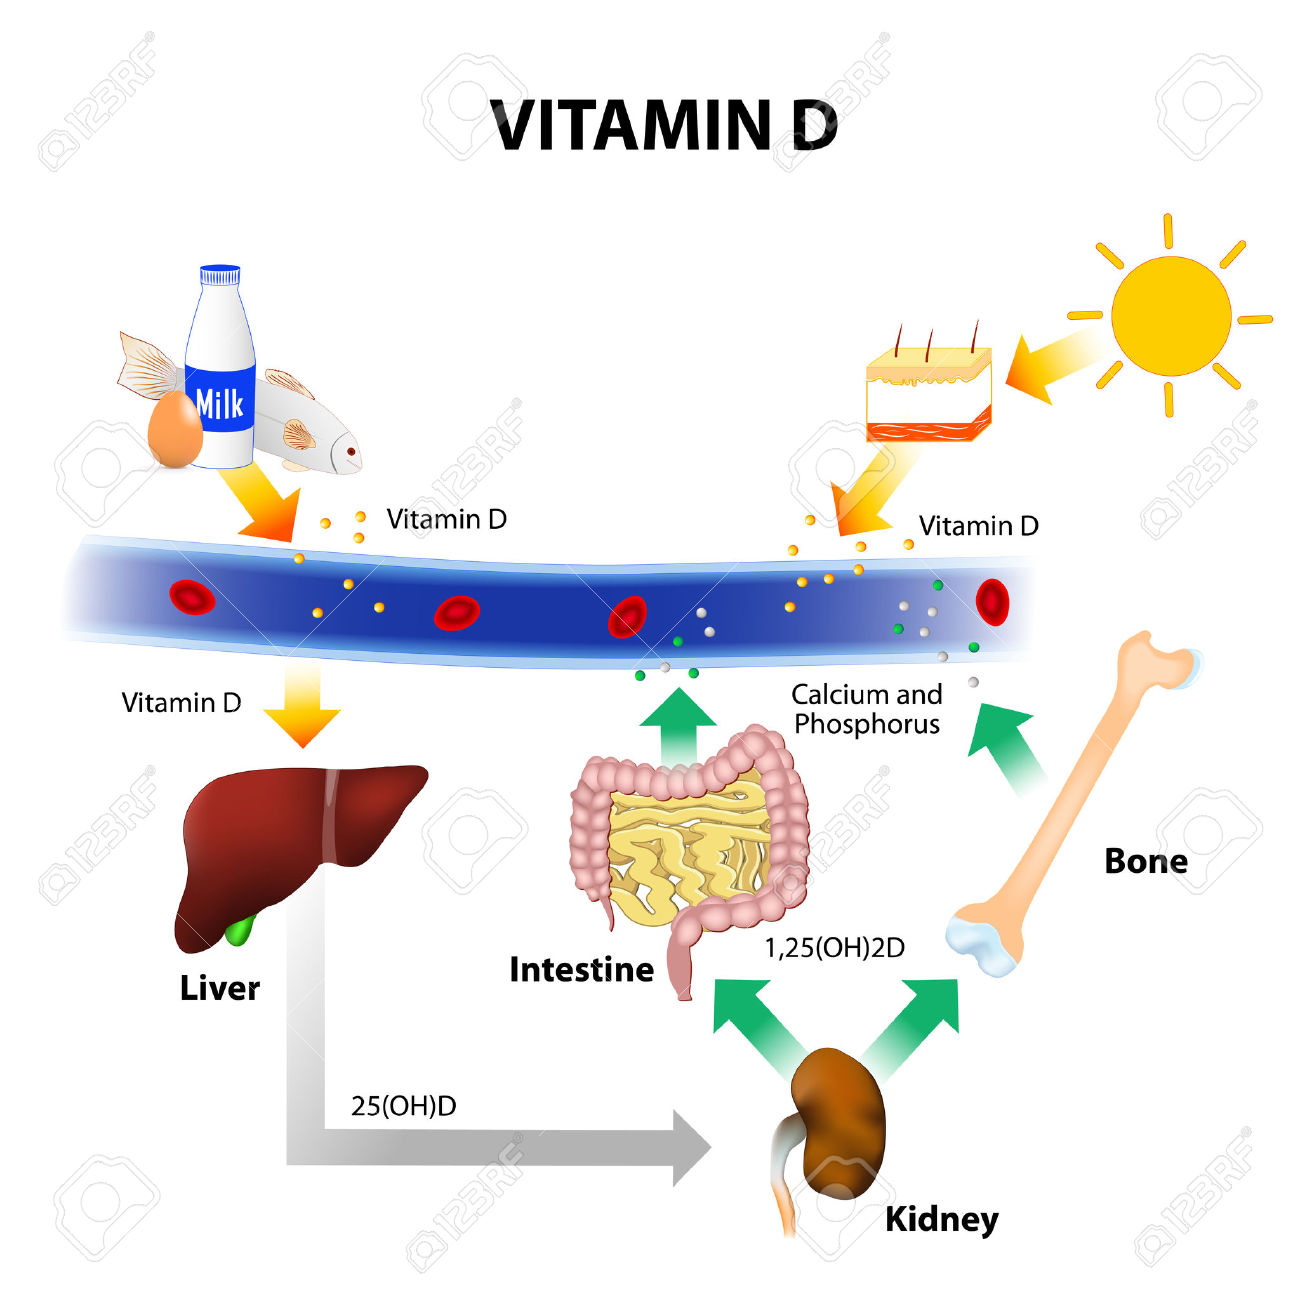 Maandelijks hoge vitamine D calcium voorkomt kanker niet blijkt uit Australische studie bij 5.000 volwassenen